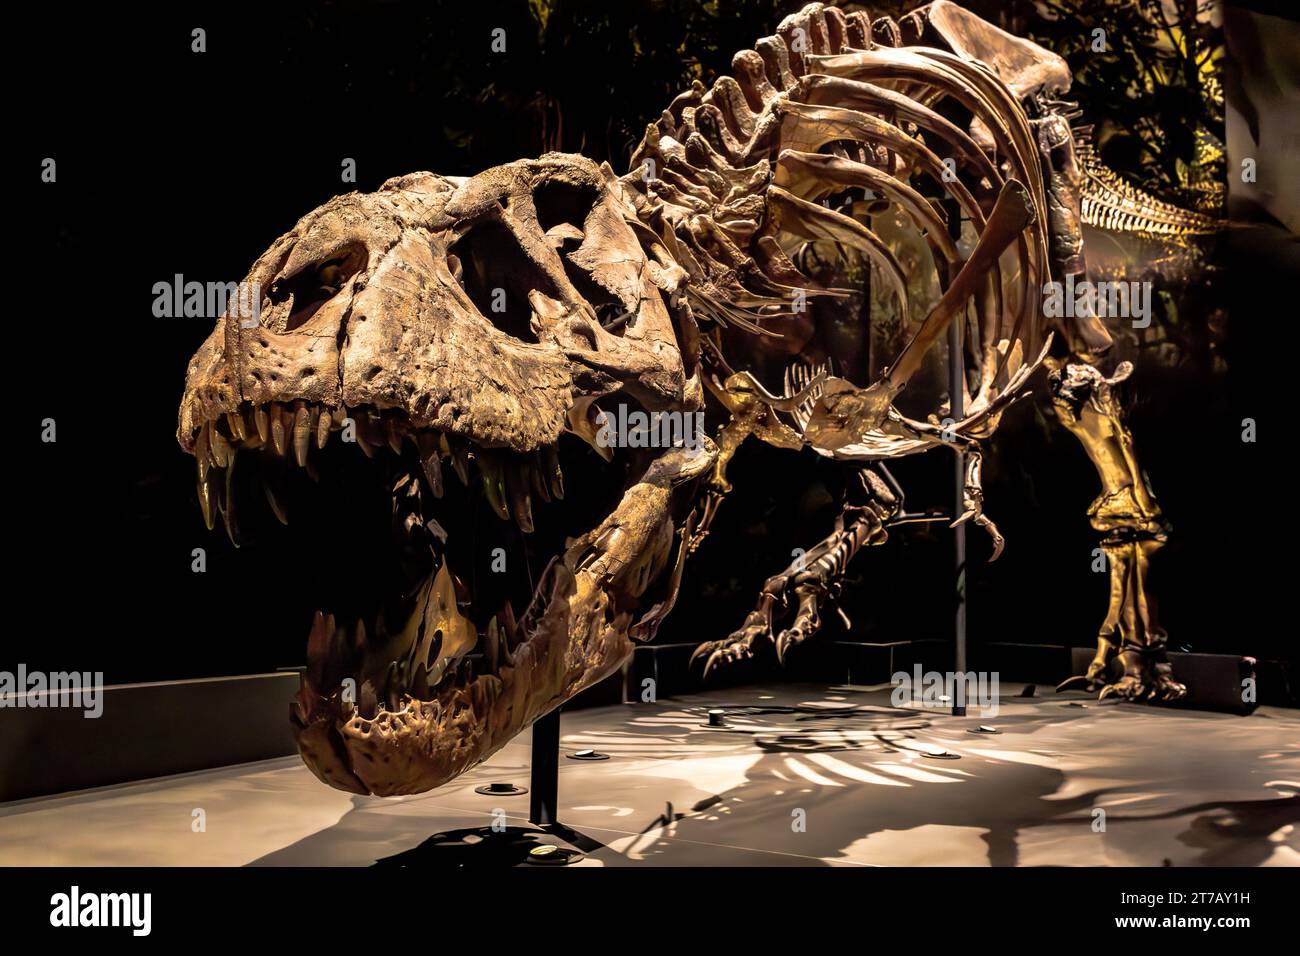 Questa immagine raffigura un'ambientazione museale con un imponente scheletro preistorico di dinosauro, le sue dimensioni sono una testimonianza della sua potenza e magnificenza Foto Stock